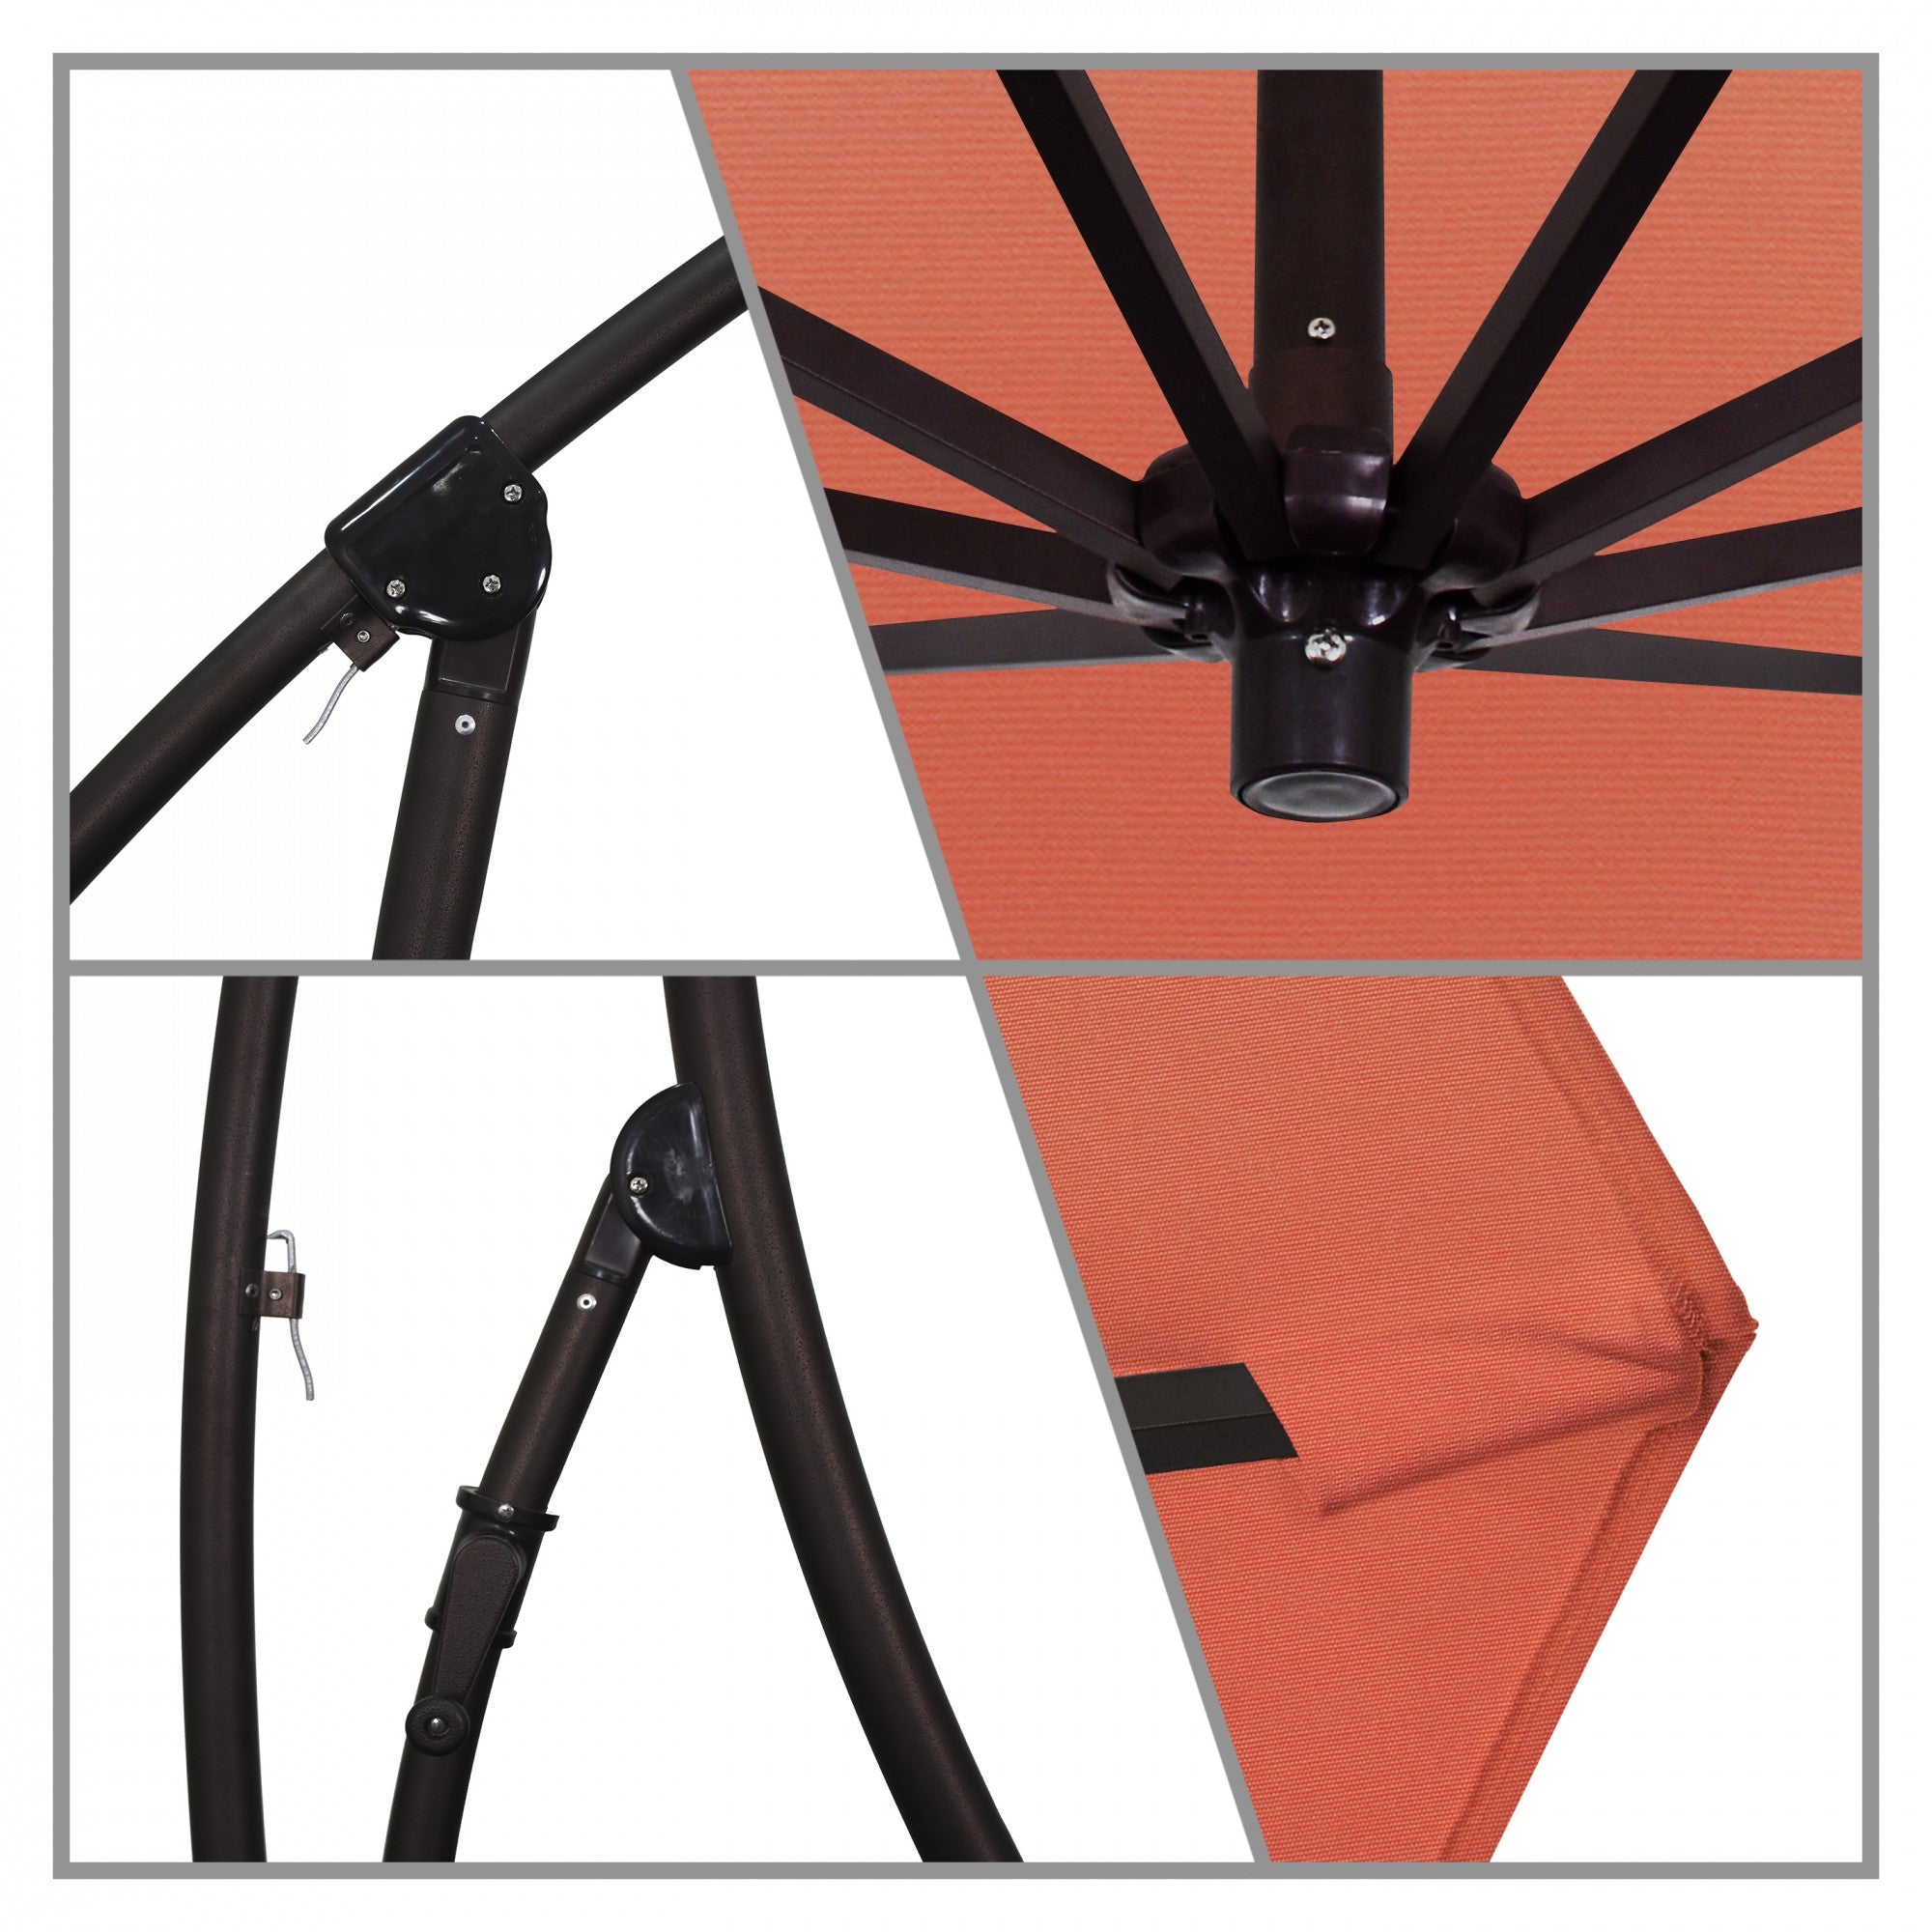 California Umbrella - 9' - Cantilever Umbrella - Aluminum Pole - Melon - Sunbrella  - BA908117-5415